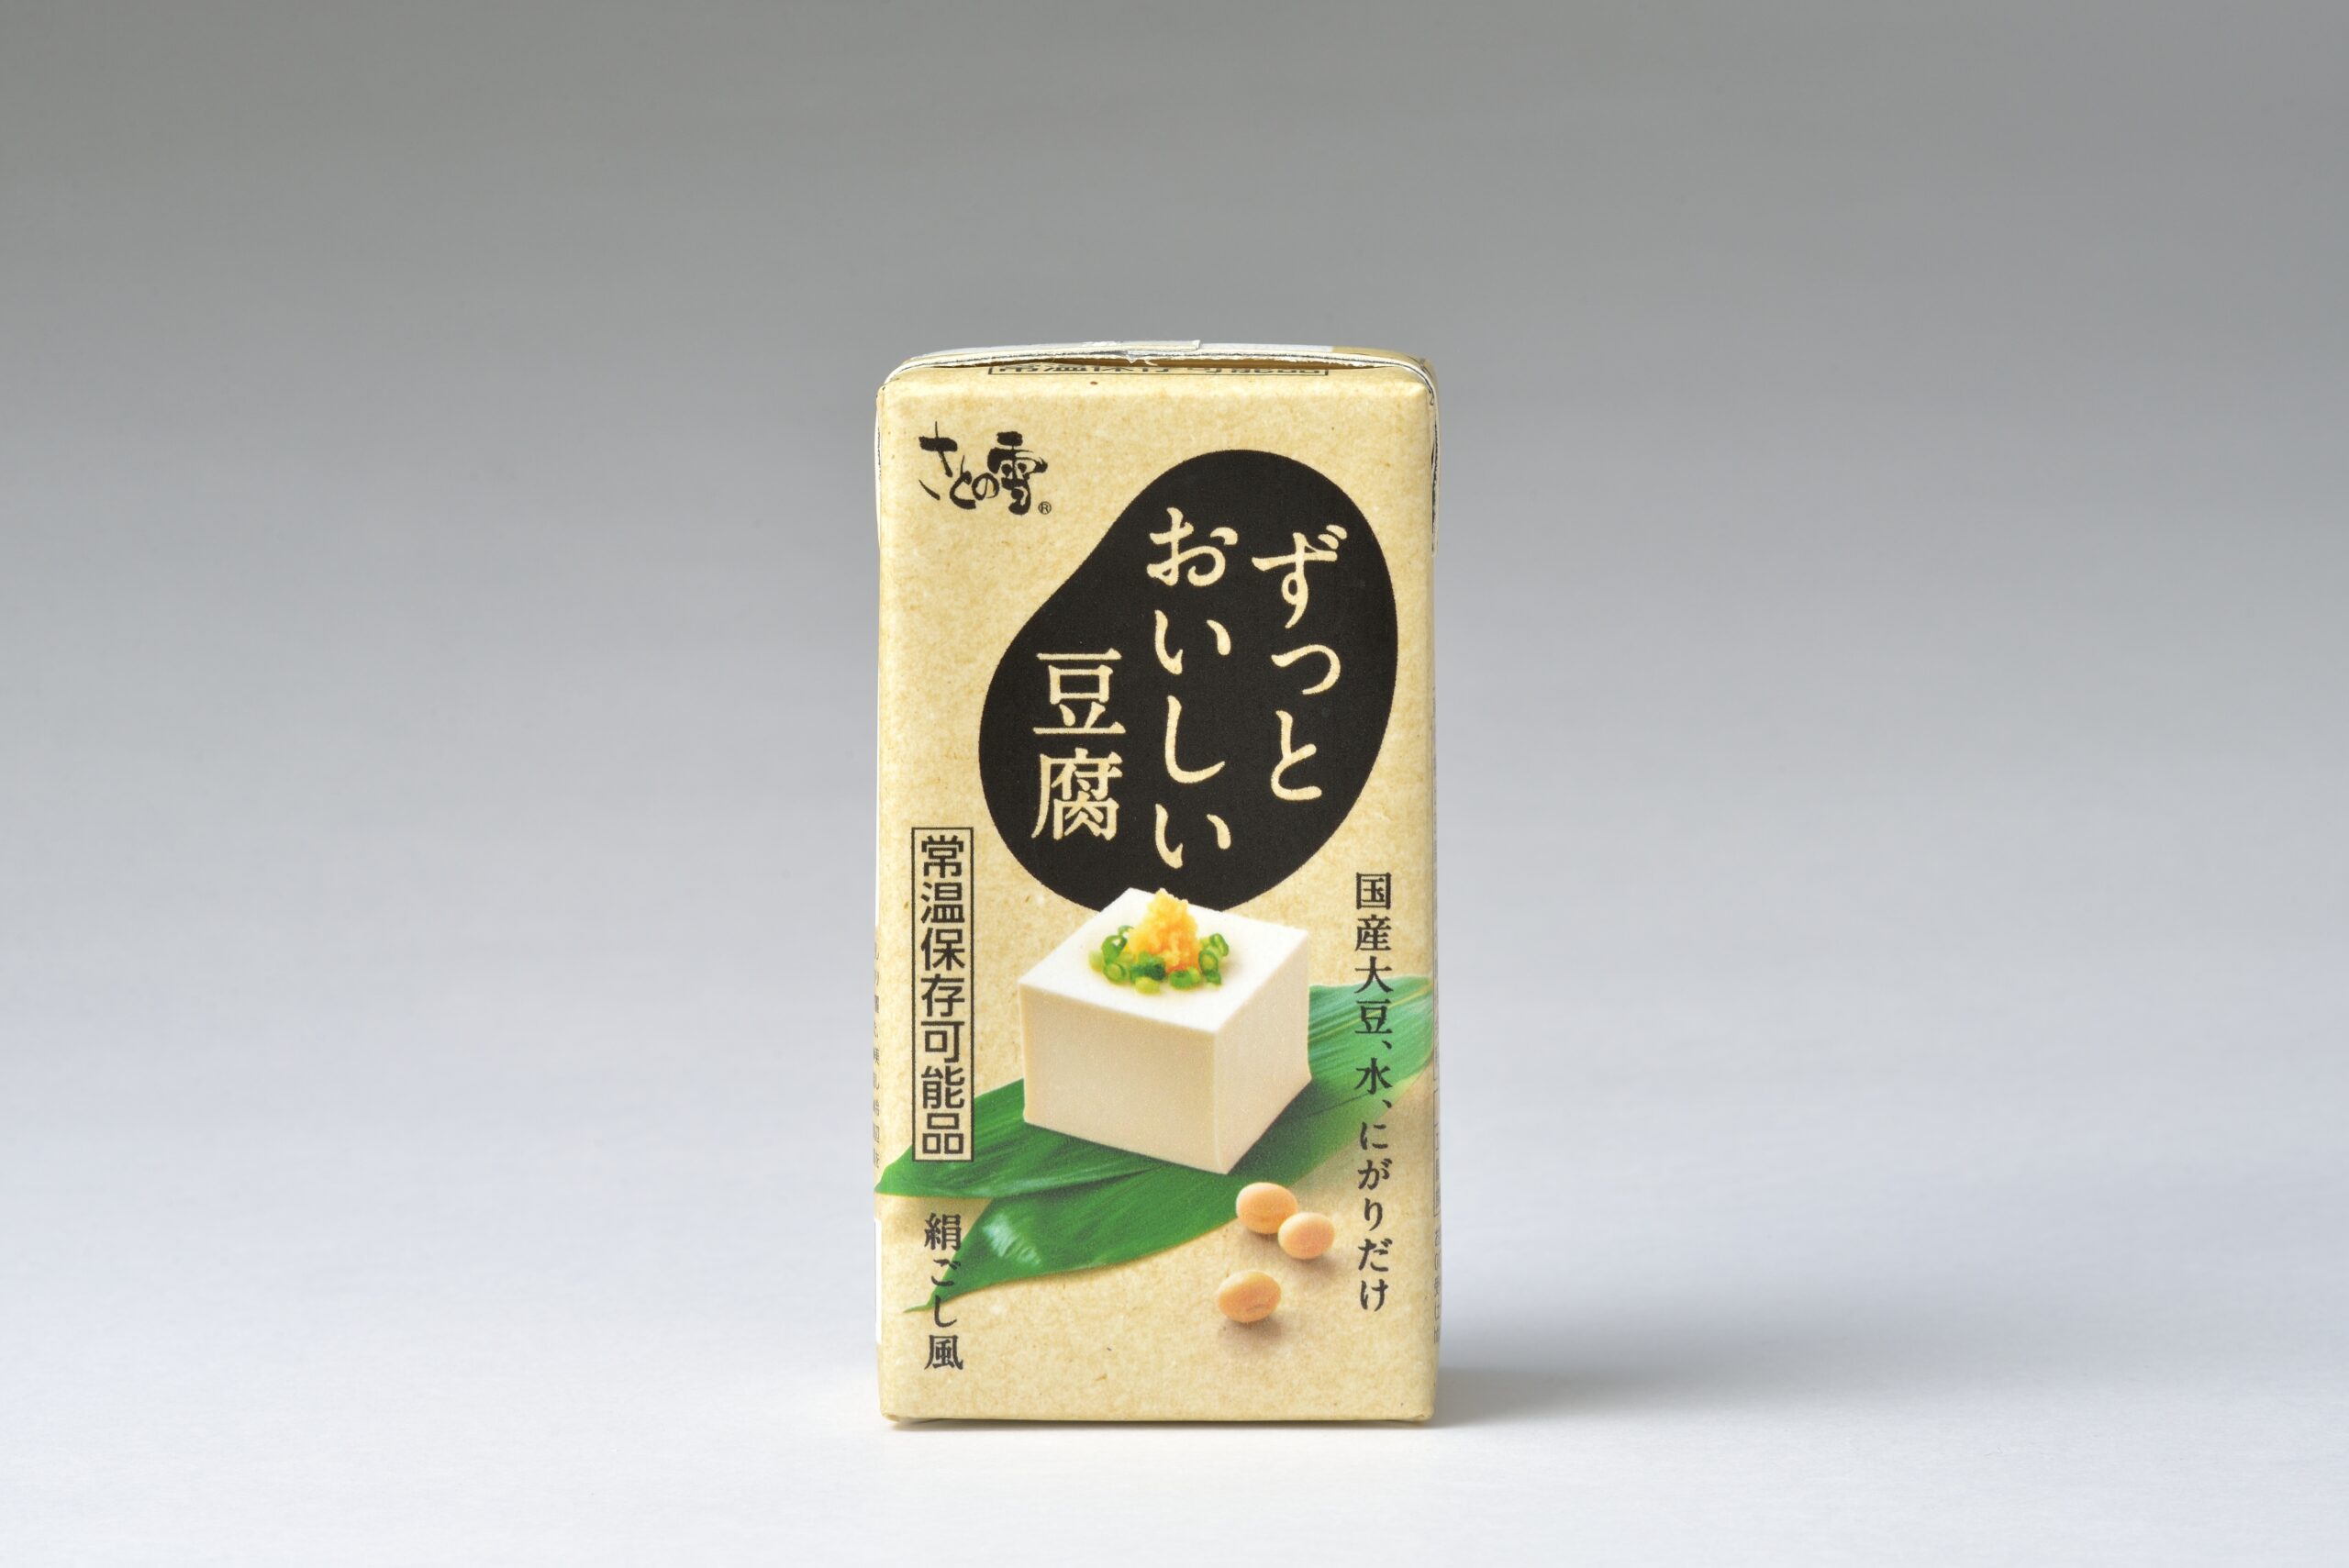 なんと120日間常温保存できる!?さとの雪食品「ずっとおいしい豆腐」新発売